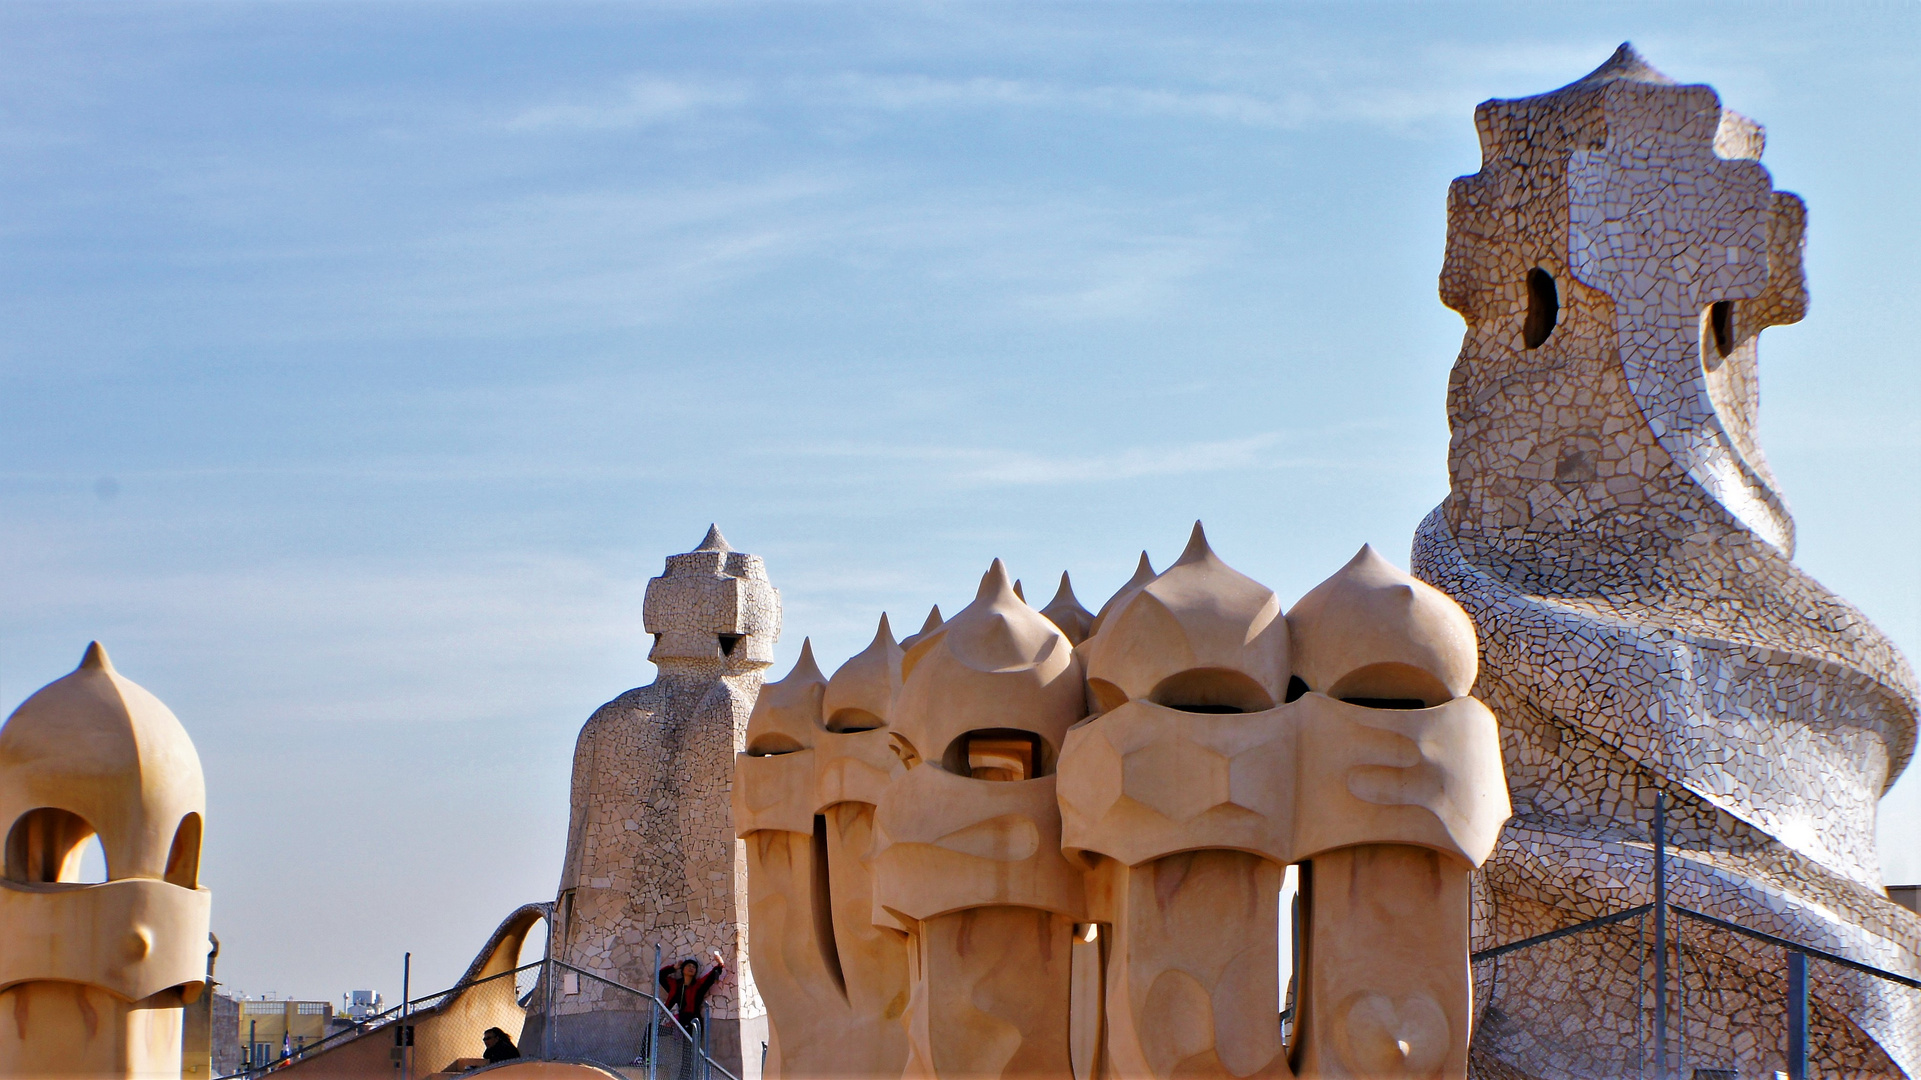 Die Türme des Antoni Gaudí